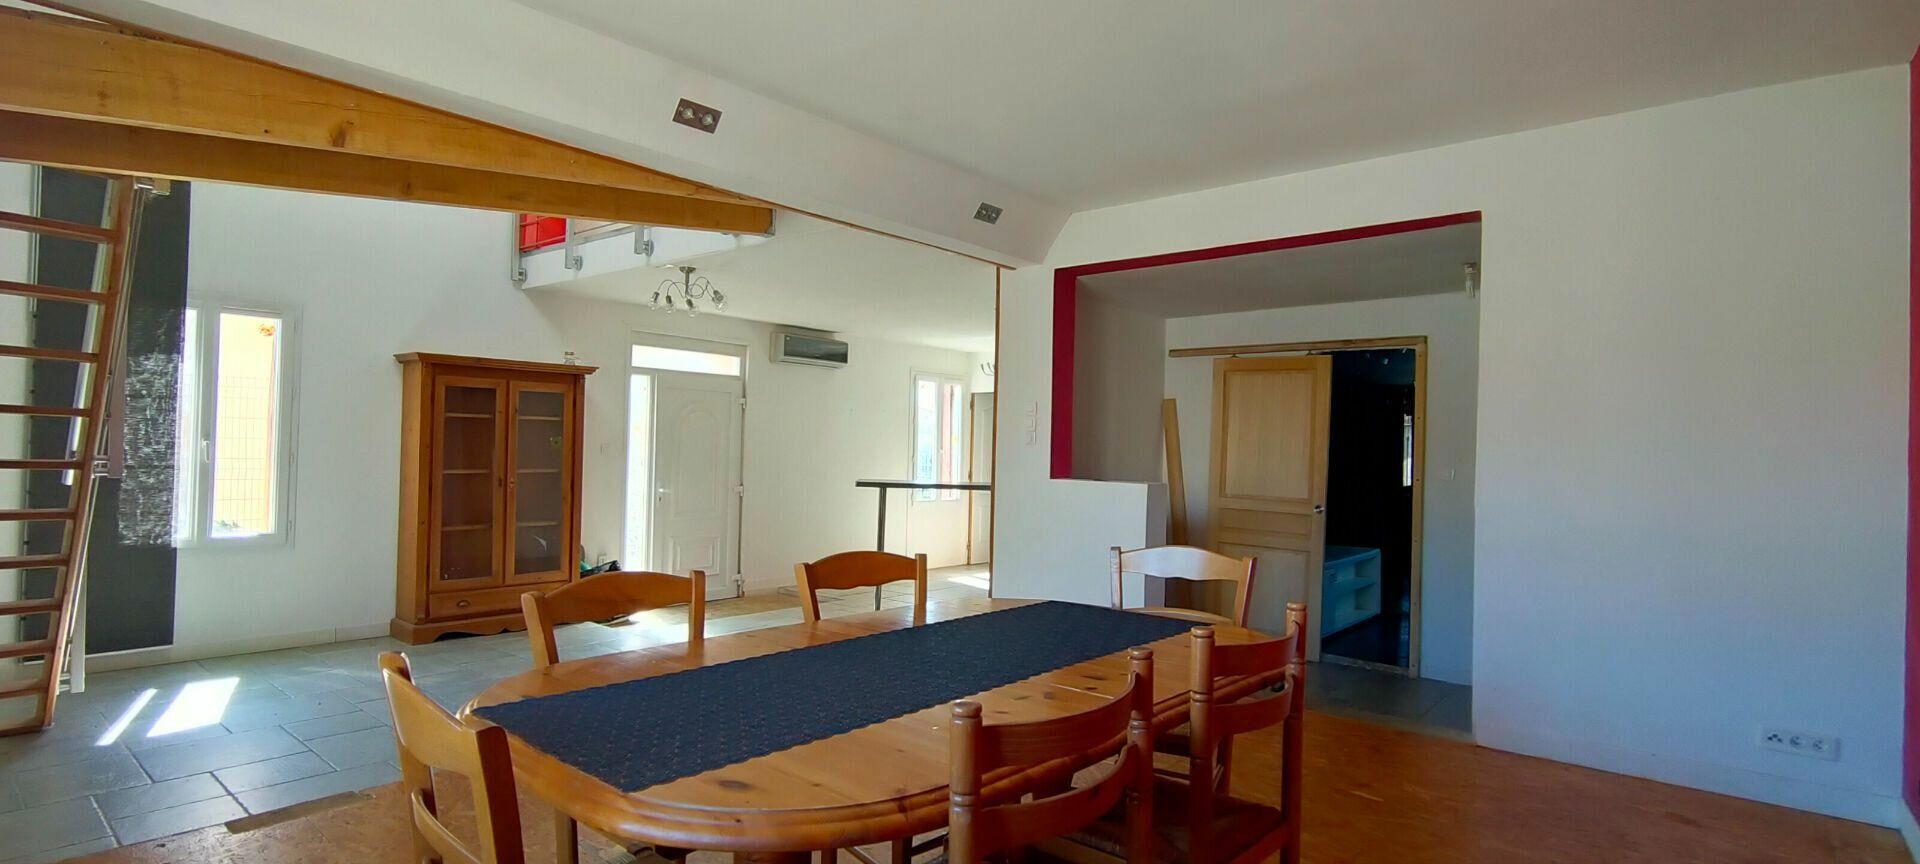 Maison à vendre 5 120m2 à Montpezat-de-Quercy vignette-2